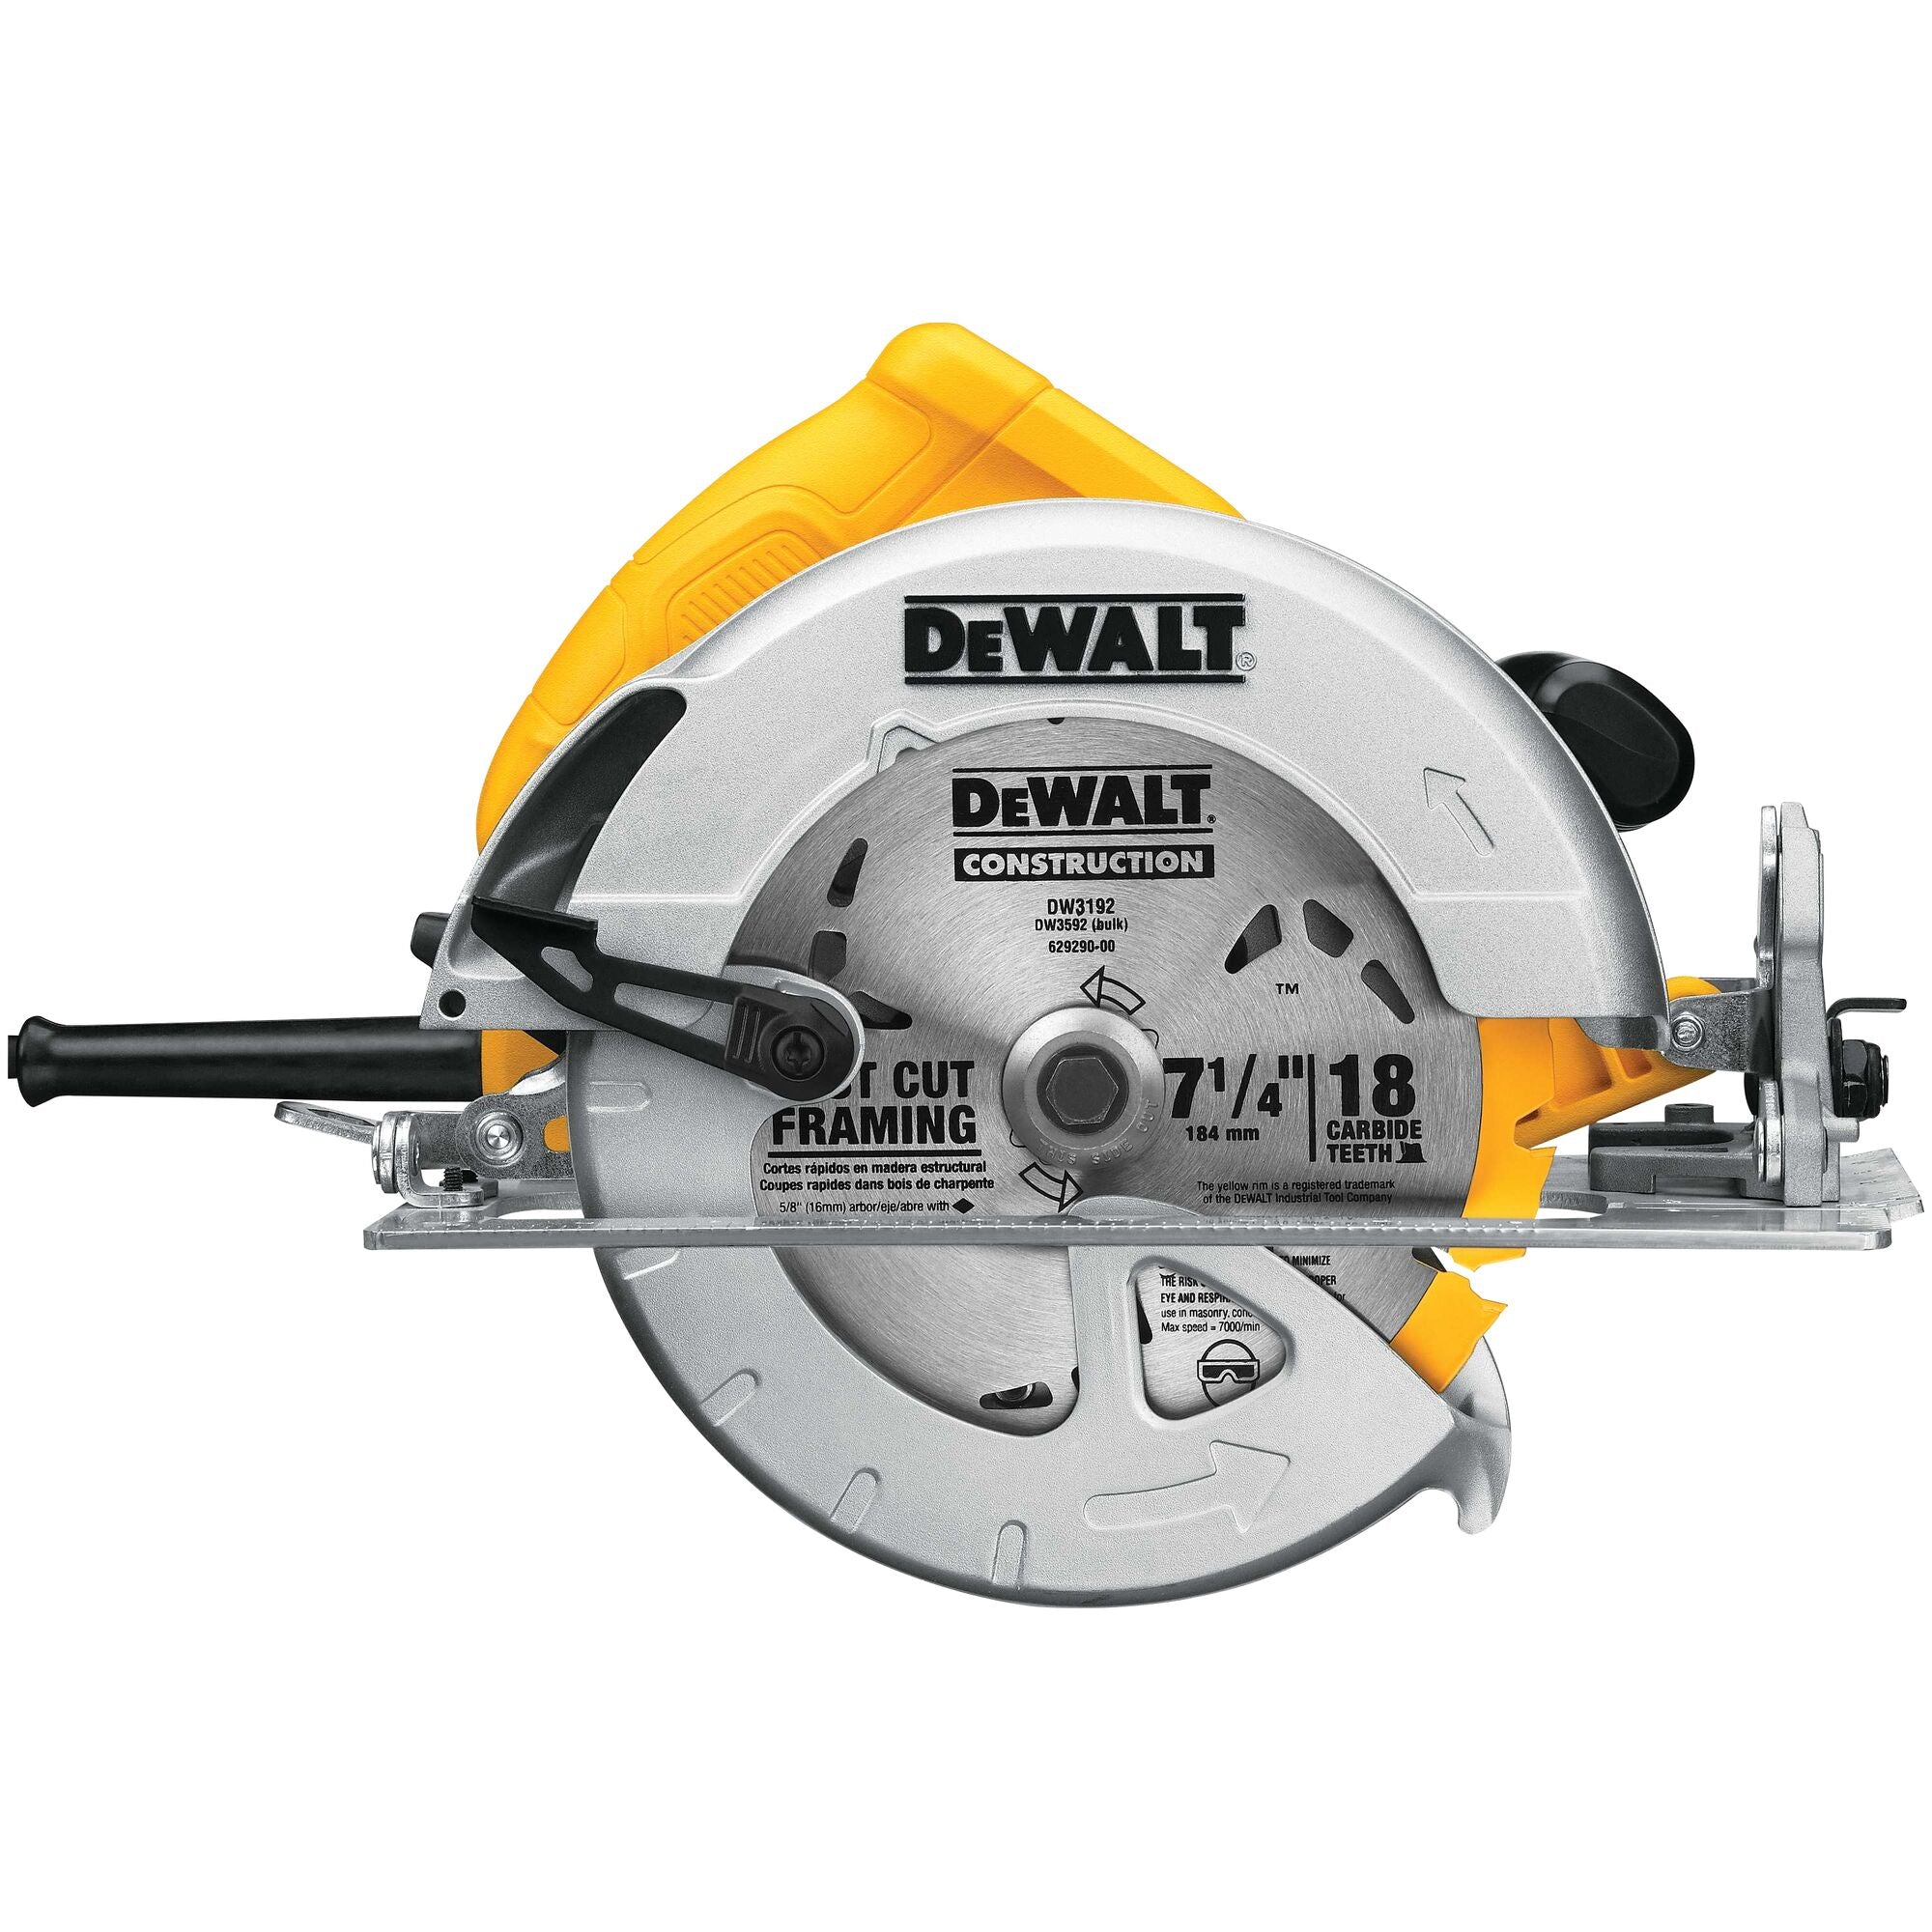 DeWALT DWE575 Circular Saw Corded 15.0 Amp